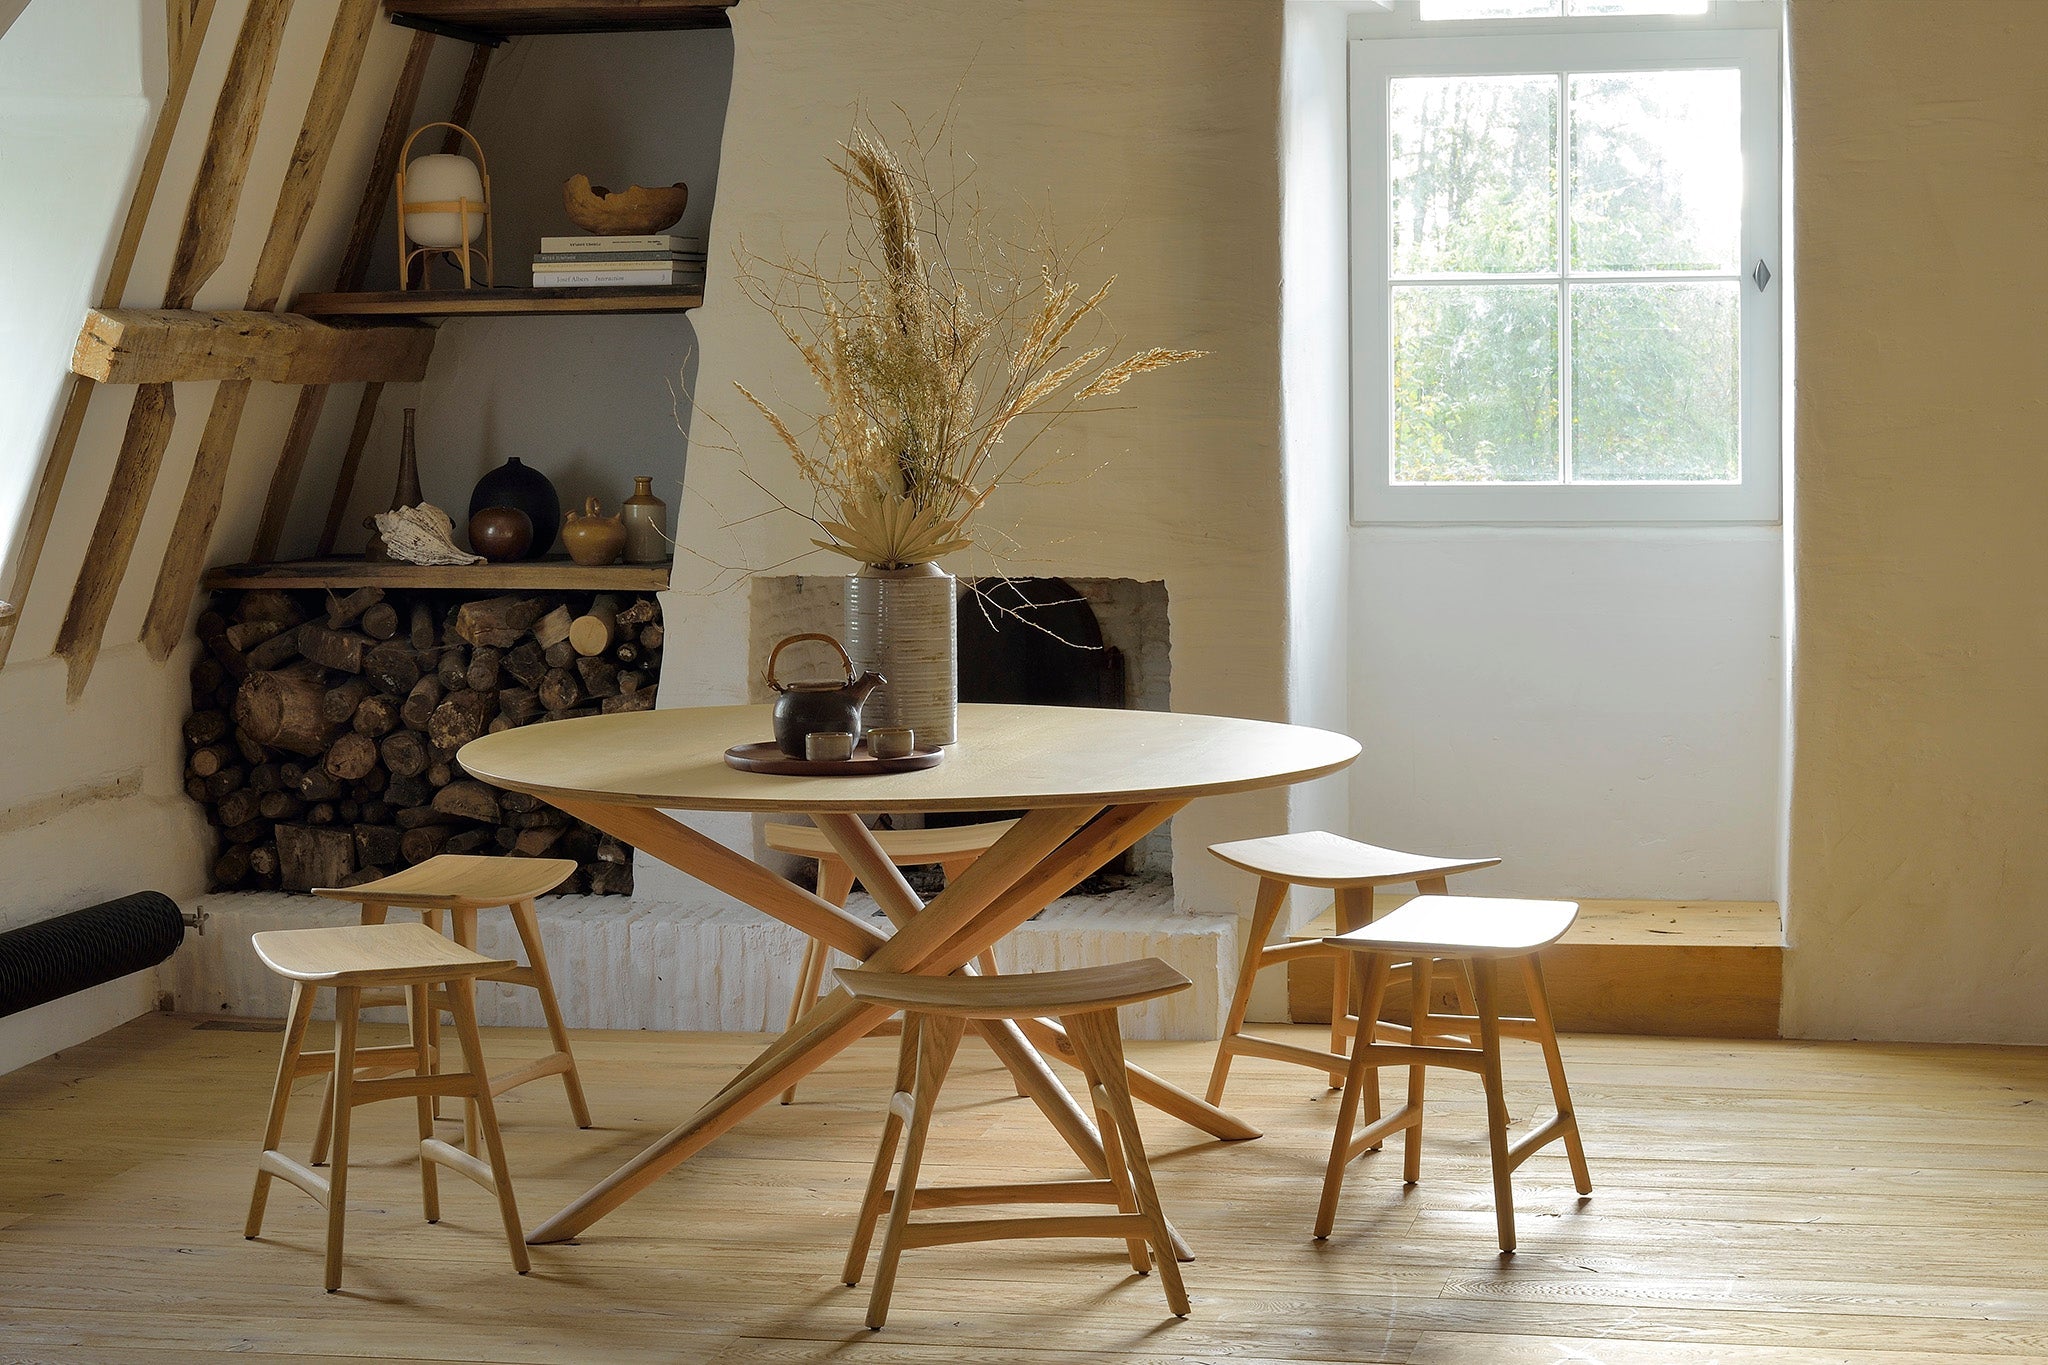 比利時原裝進口實木傢俬 - 餐桌系列 -  Mikado系列橡木圓形餐桌